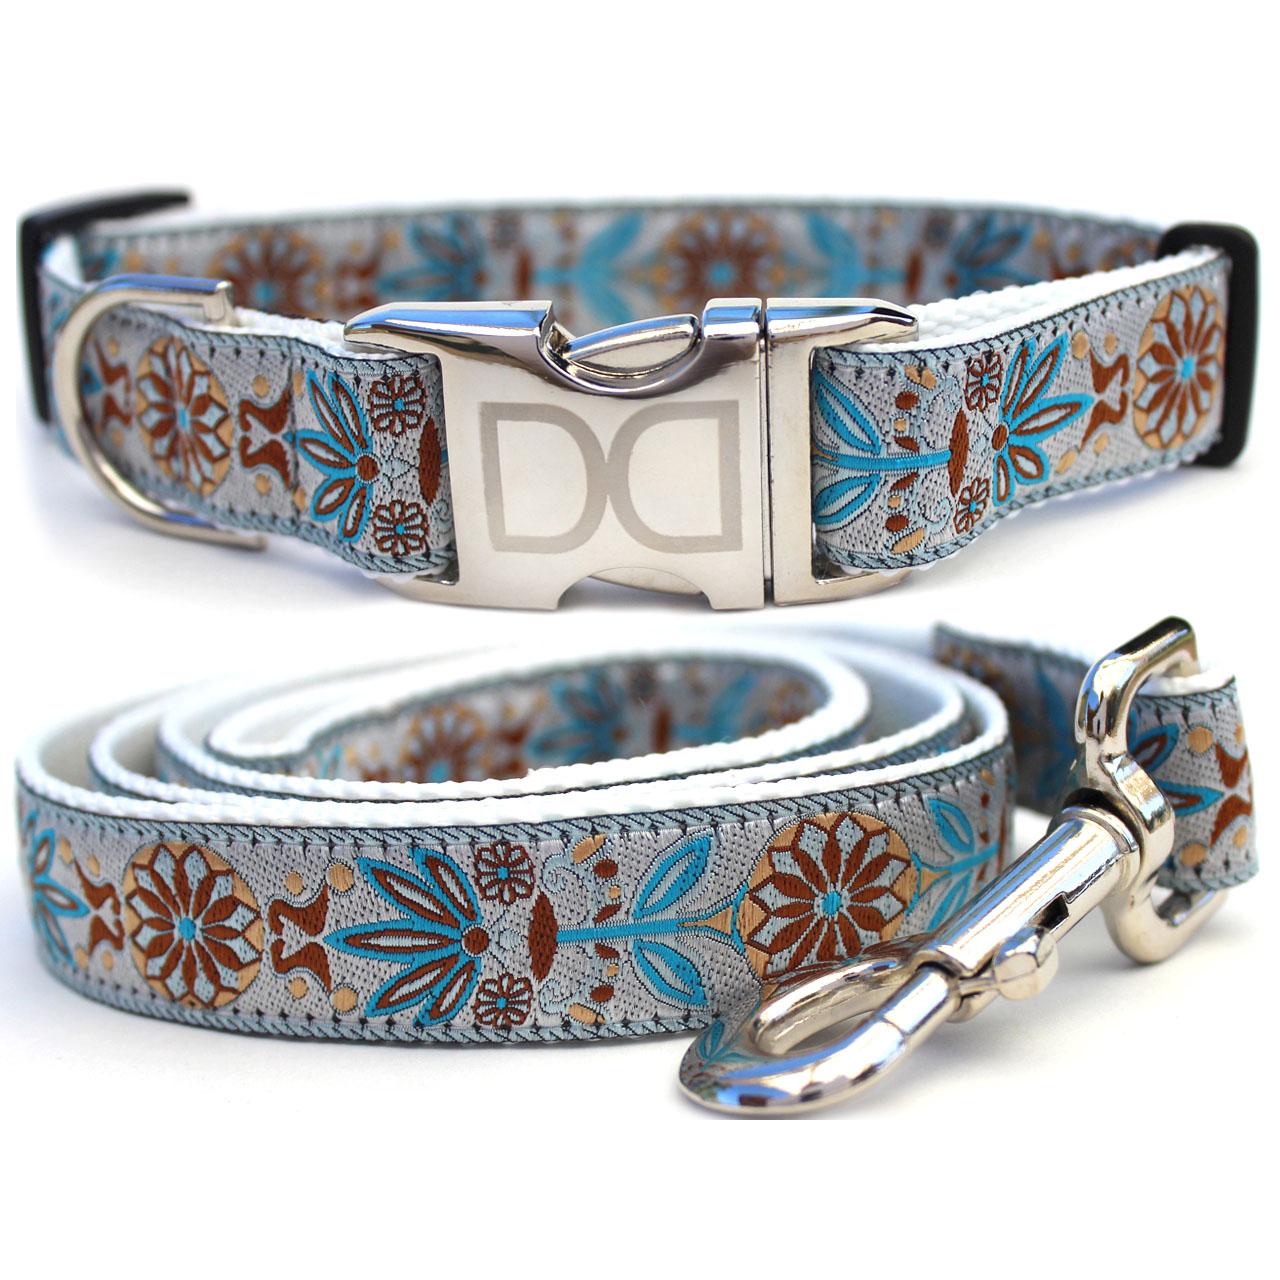 Diva Dog Boho Morocco Dog Collar and Leash Set